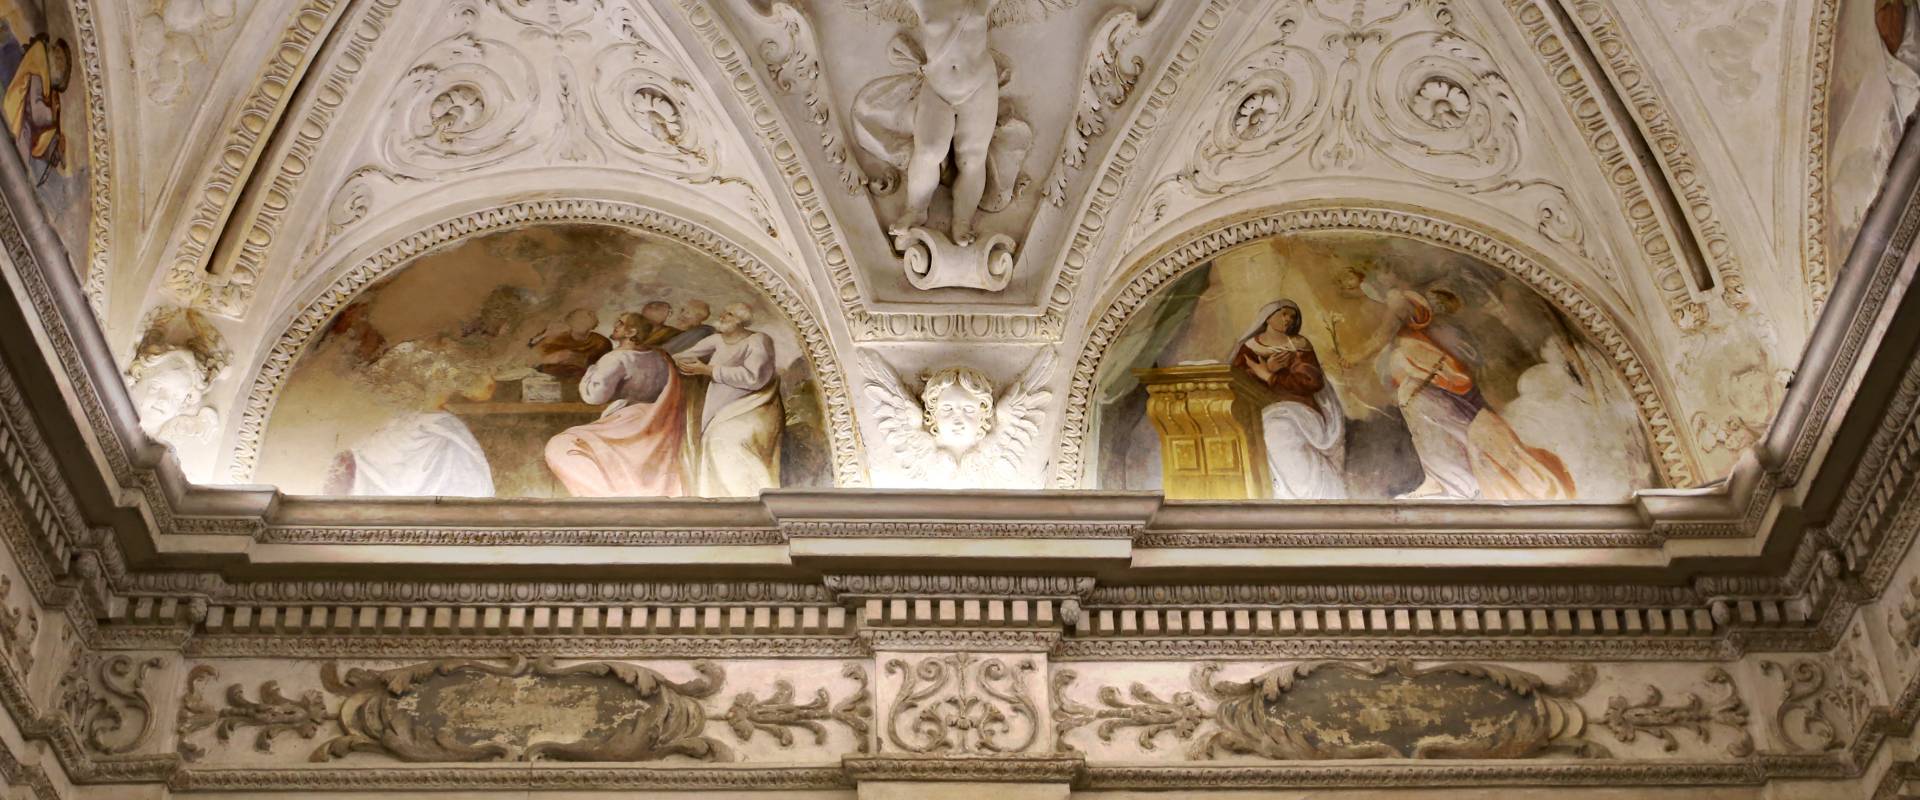 Gualtieri, palazzo bentivoglio, cappella, storie della vergine di scuola emiliana del 1605, 03 foto di Sailko